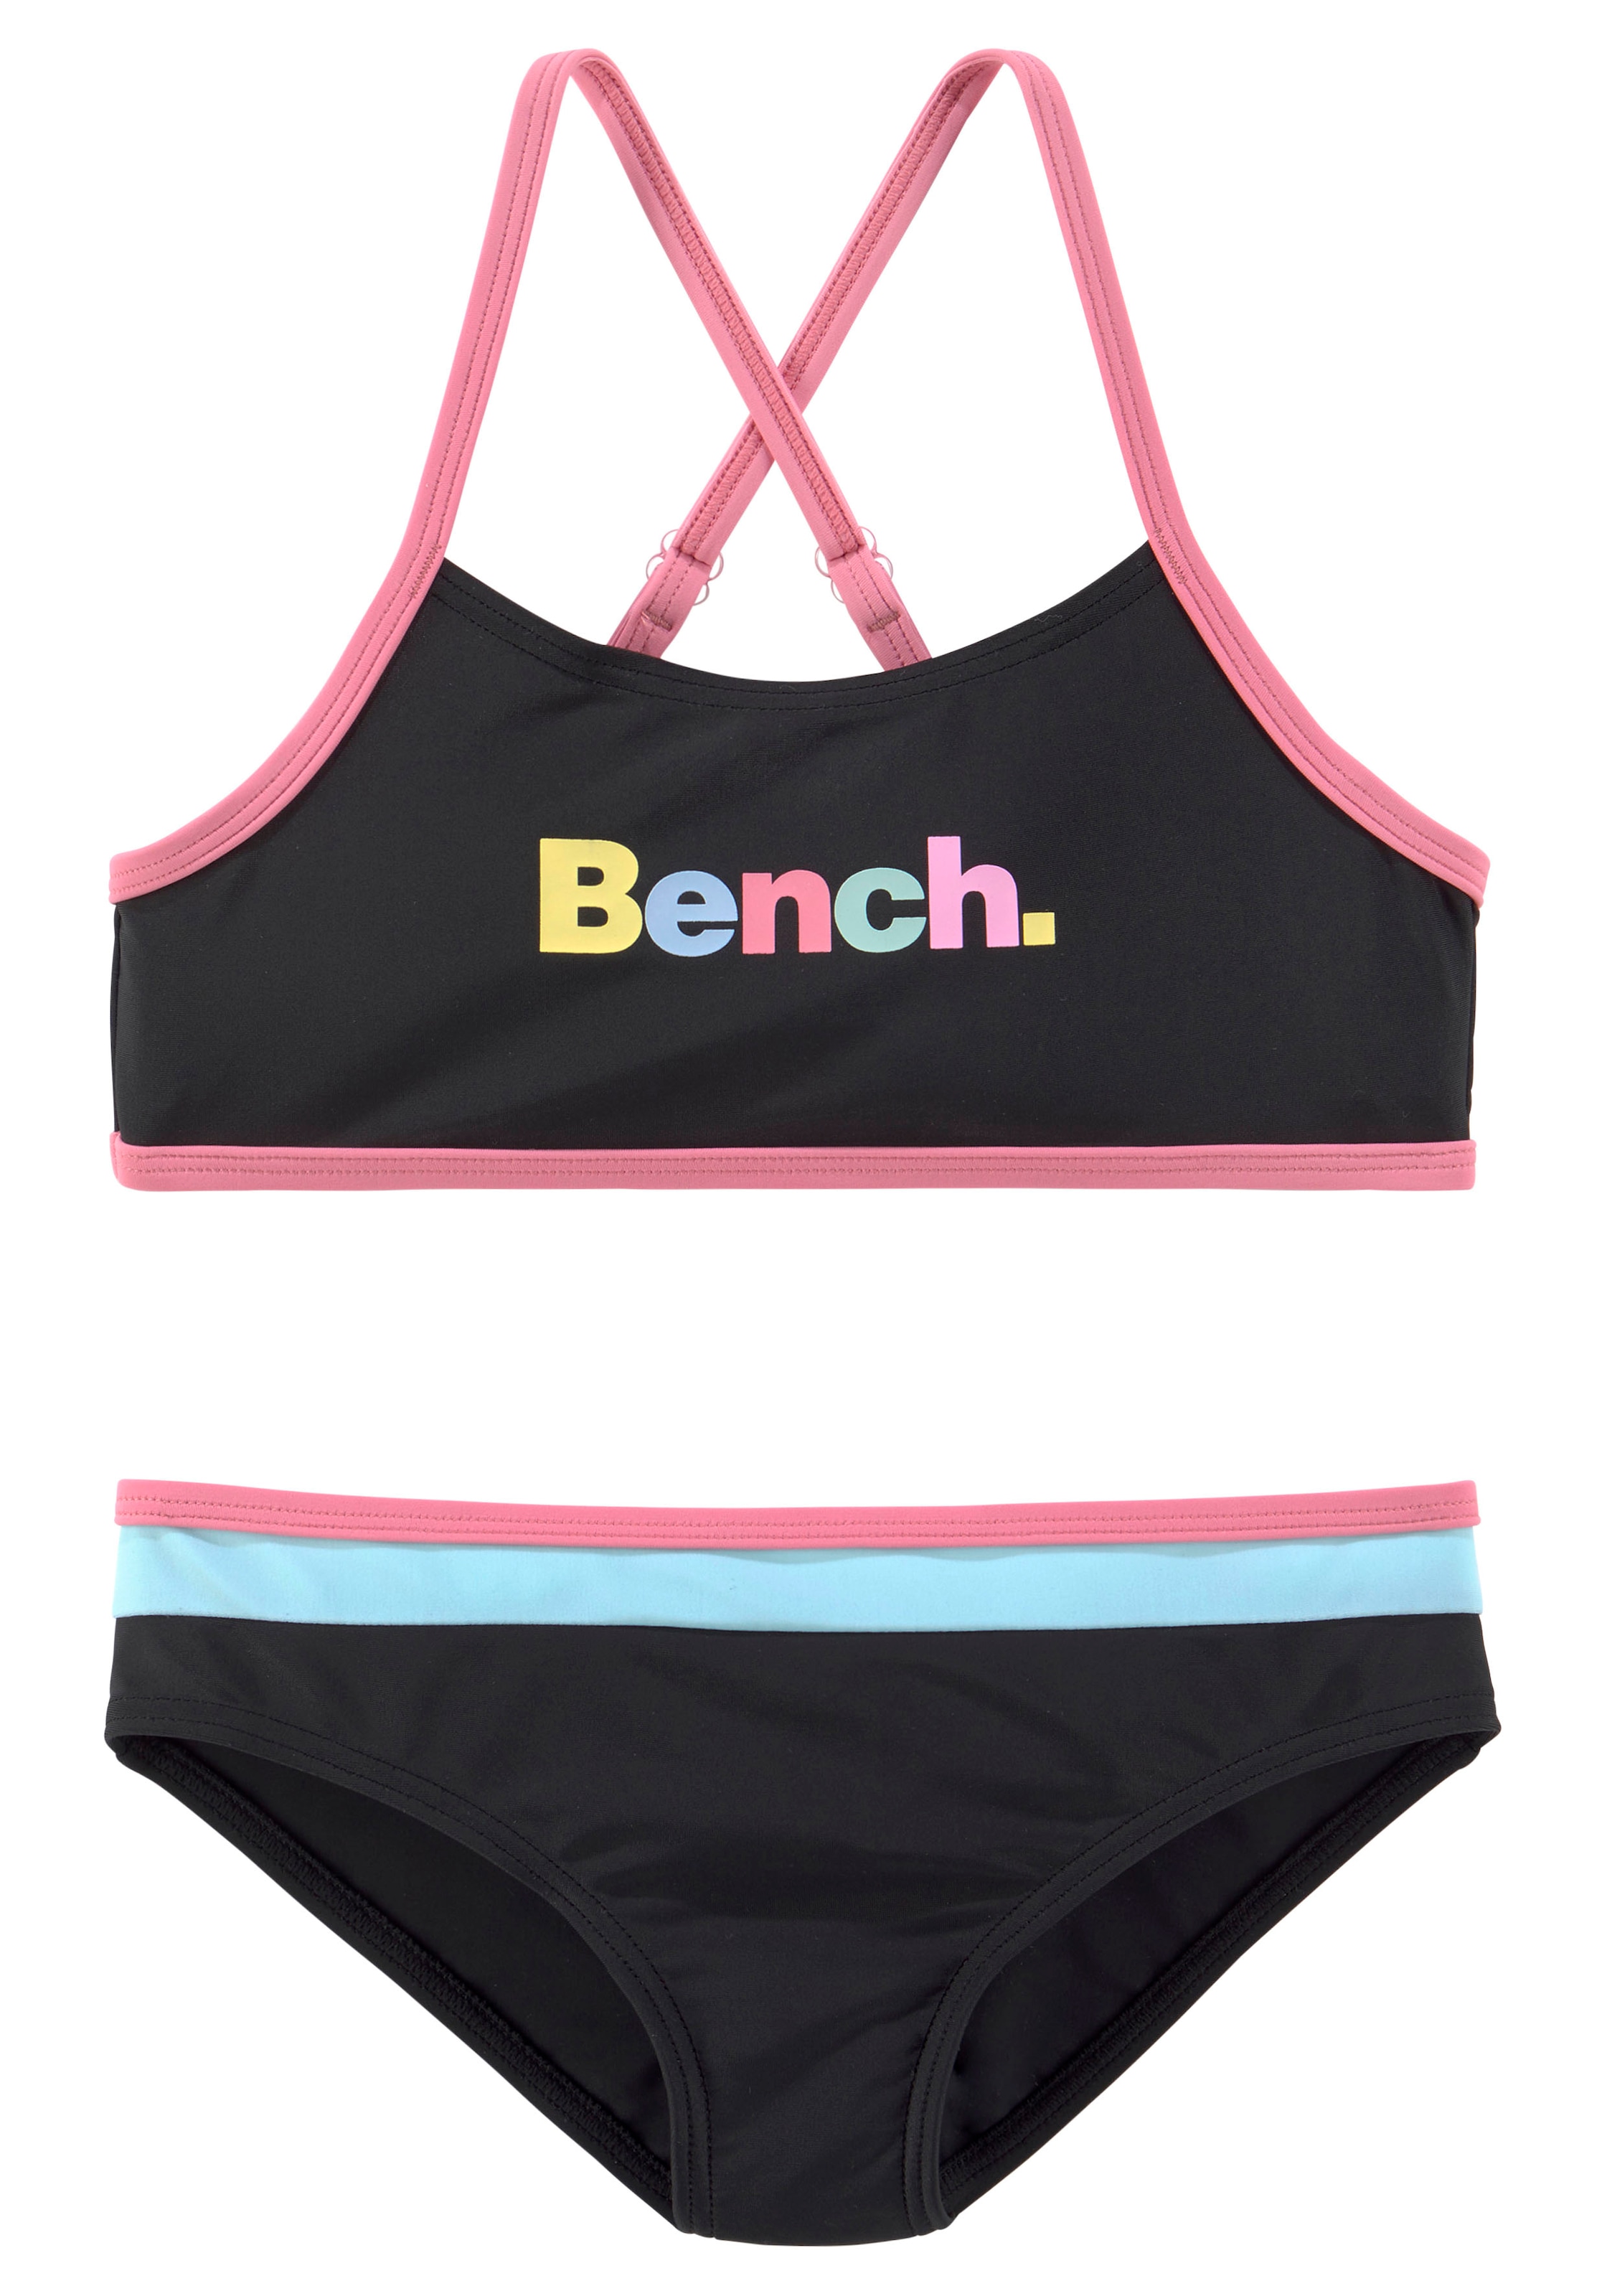 Bench. Bustier-Bikini, mit bunten Details